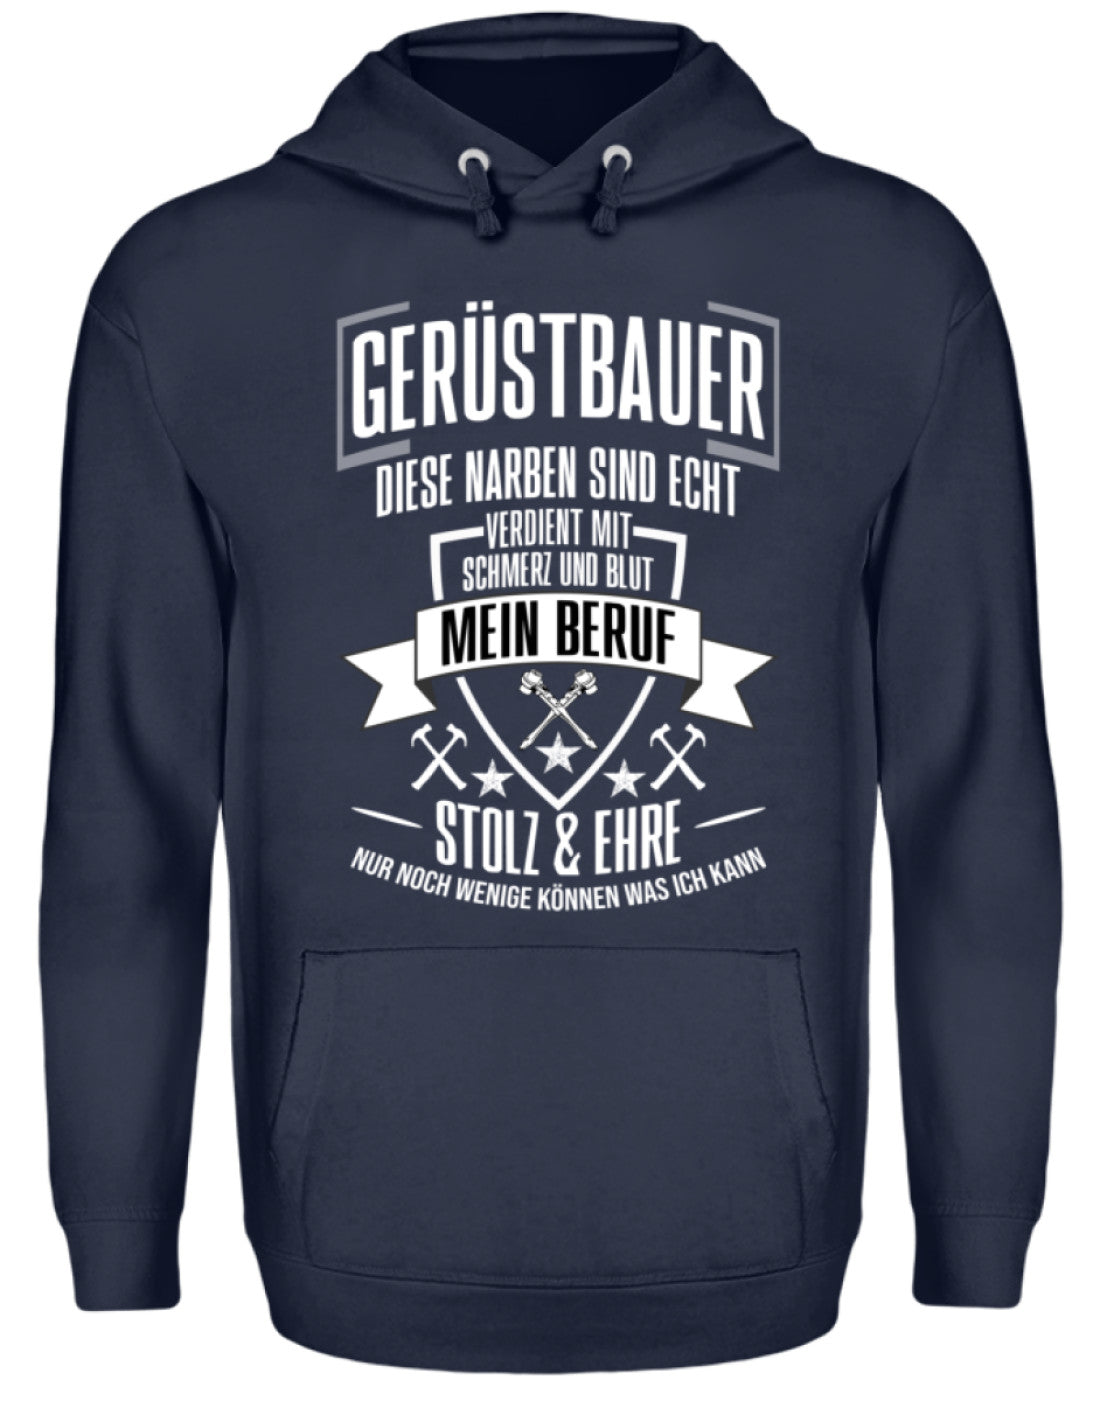 Gerüstbauer / MEIN BERUF €34.95 Gerüstbauer - Shop >>